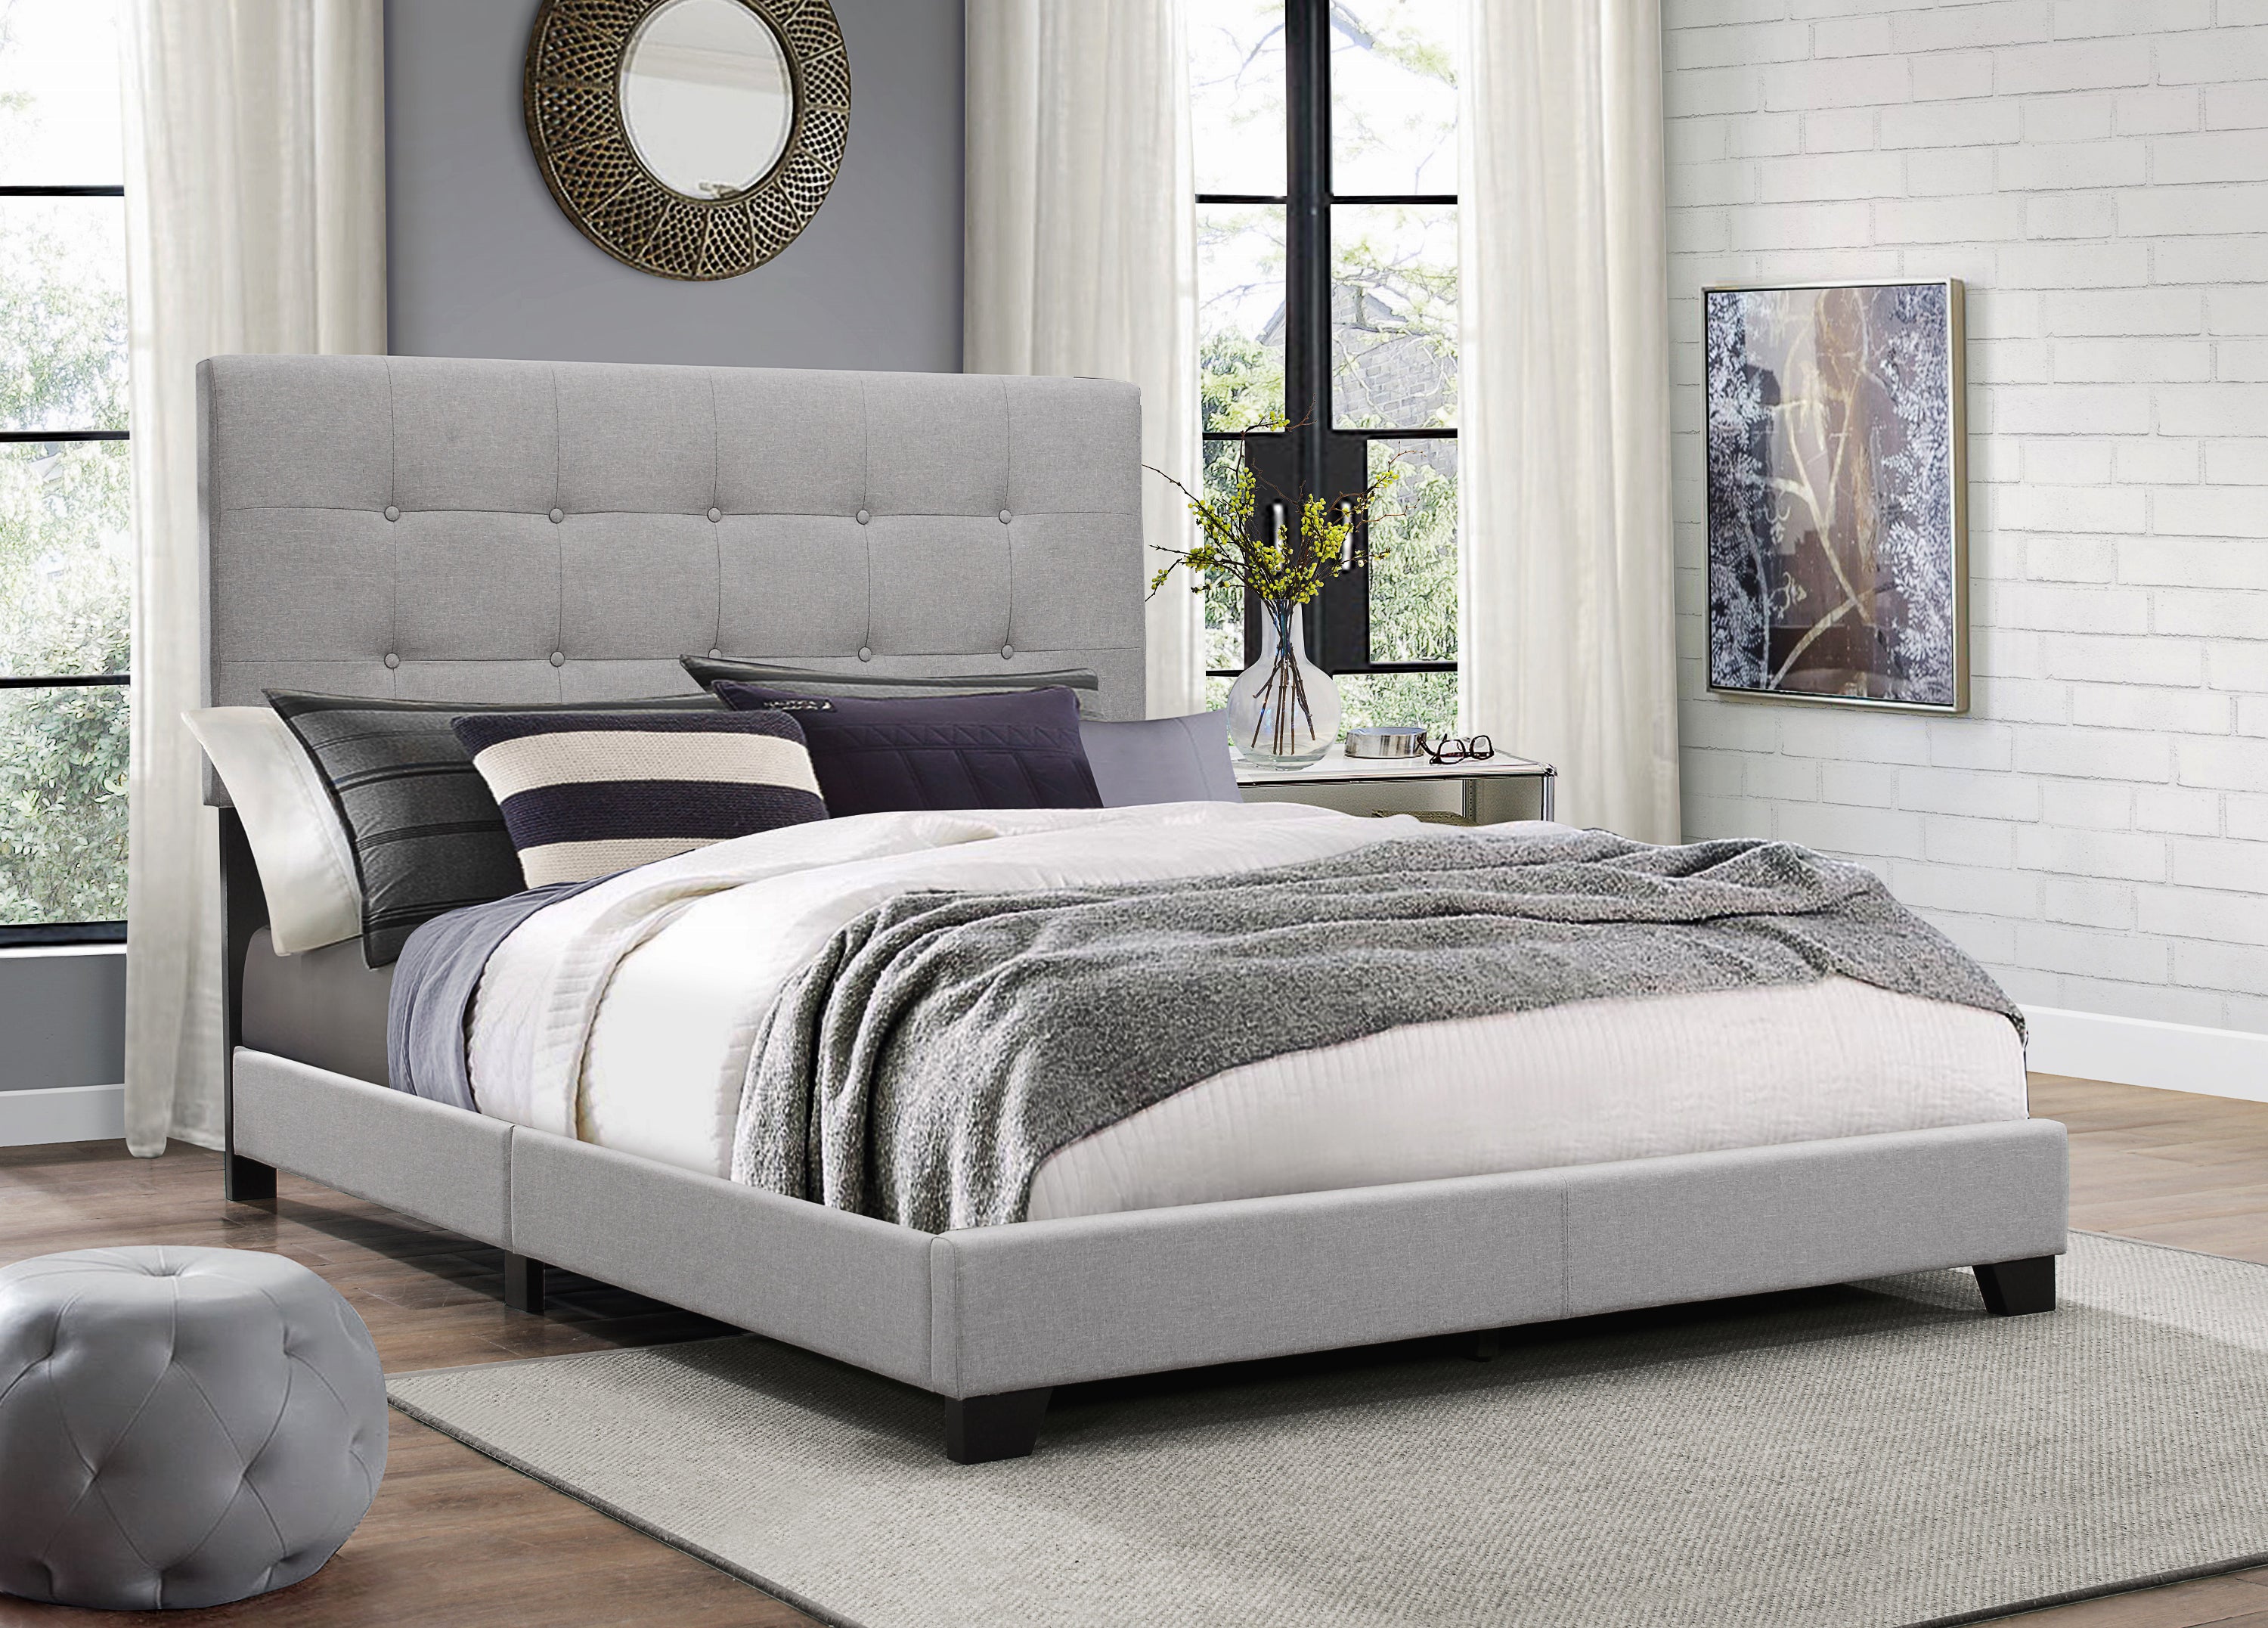 bed and mattress klarna